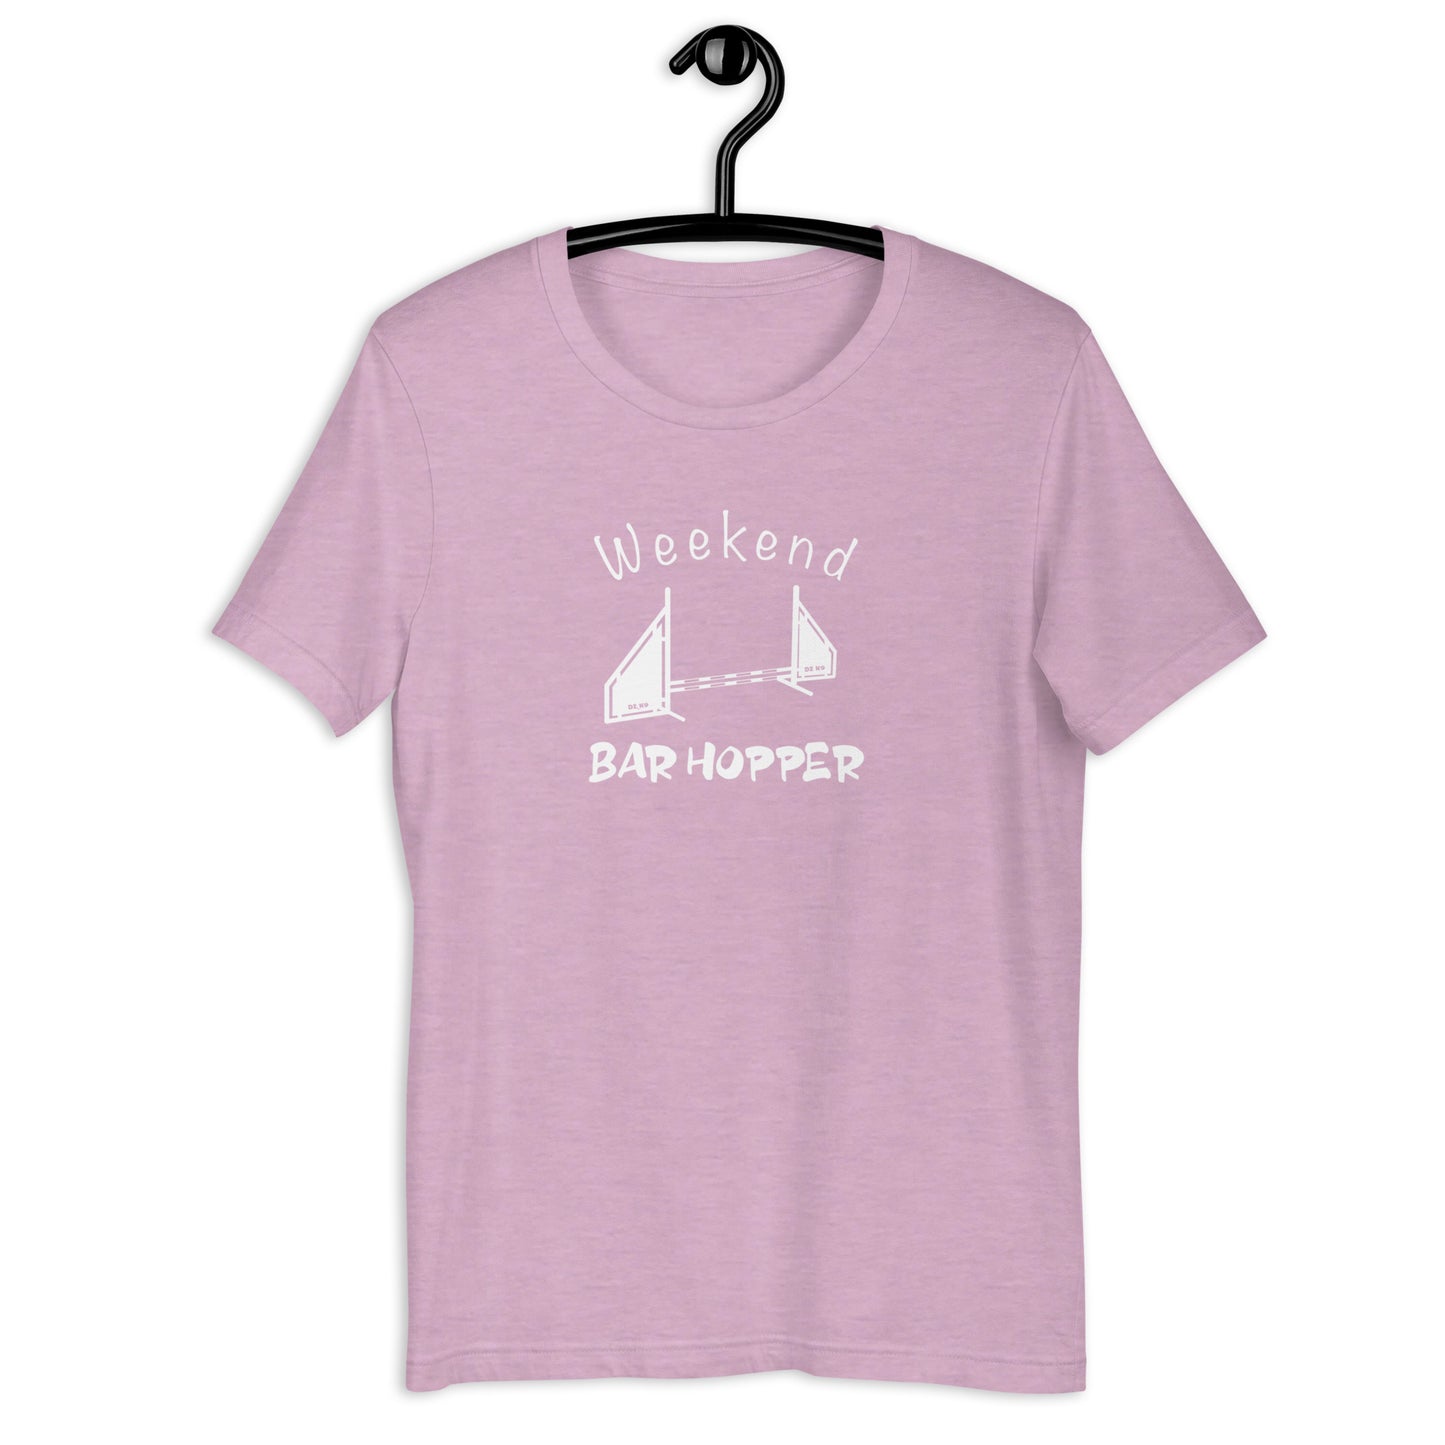 WEEKEND BAR HOPPER Unisex t-shirt